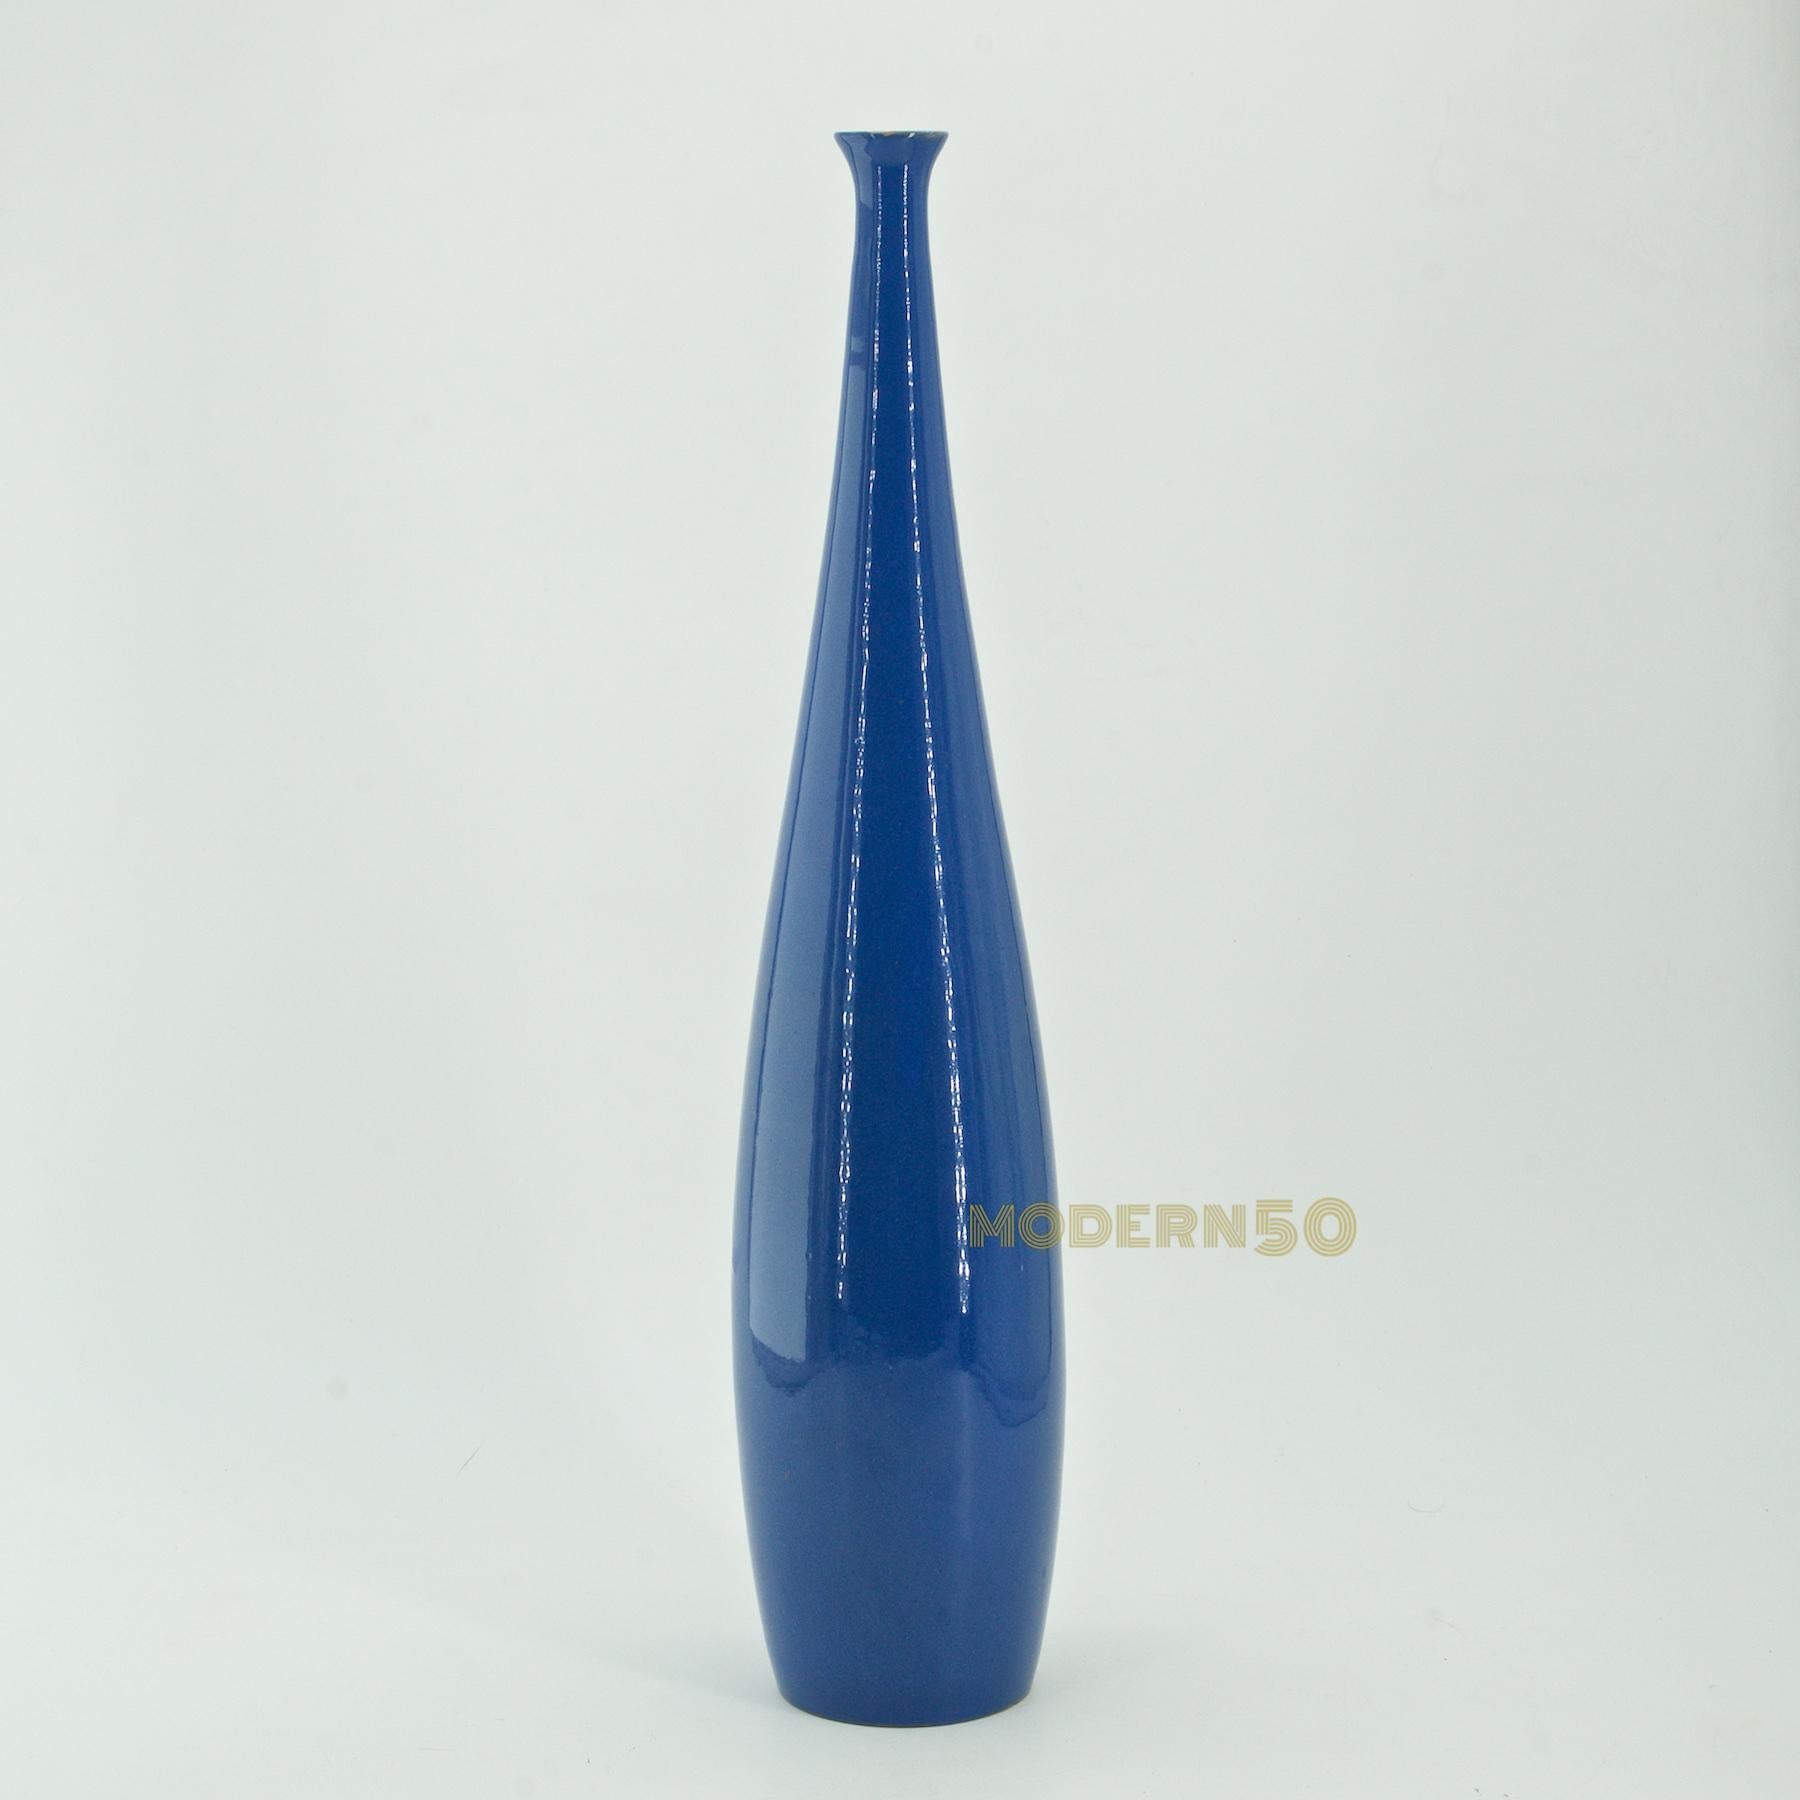 Un élément de décor tout droit sorti d'un tableau de Giorgio Morandi. Vase en forme de bouteille à col étroit, en glaçure bleue brillante, moulé à la main.